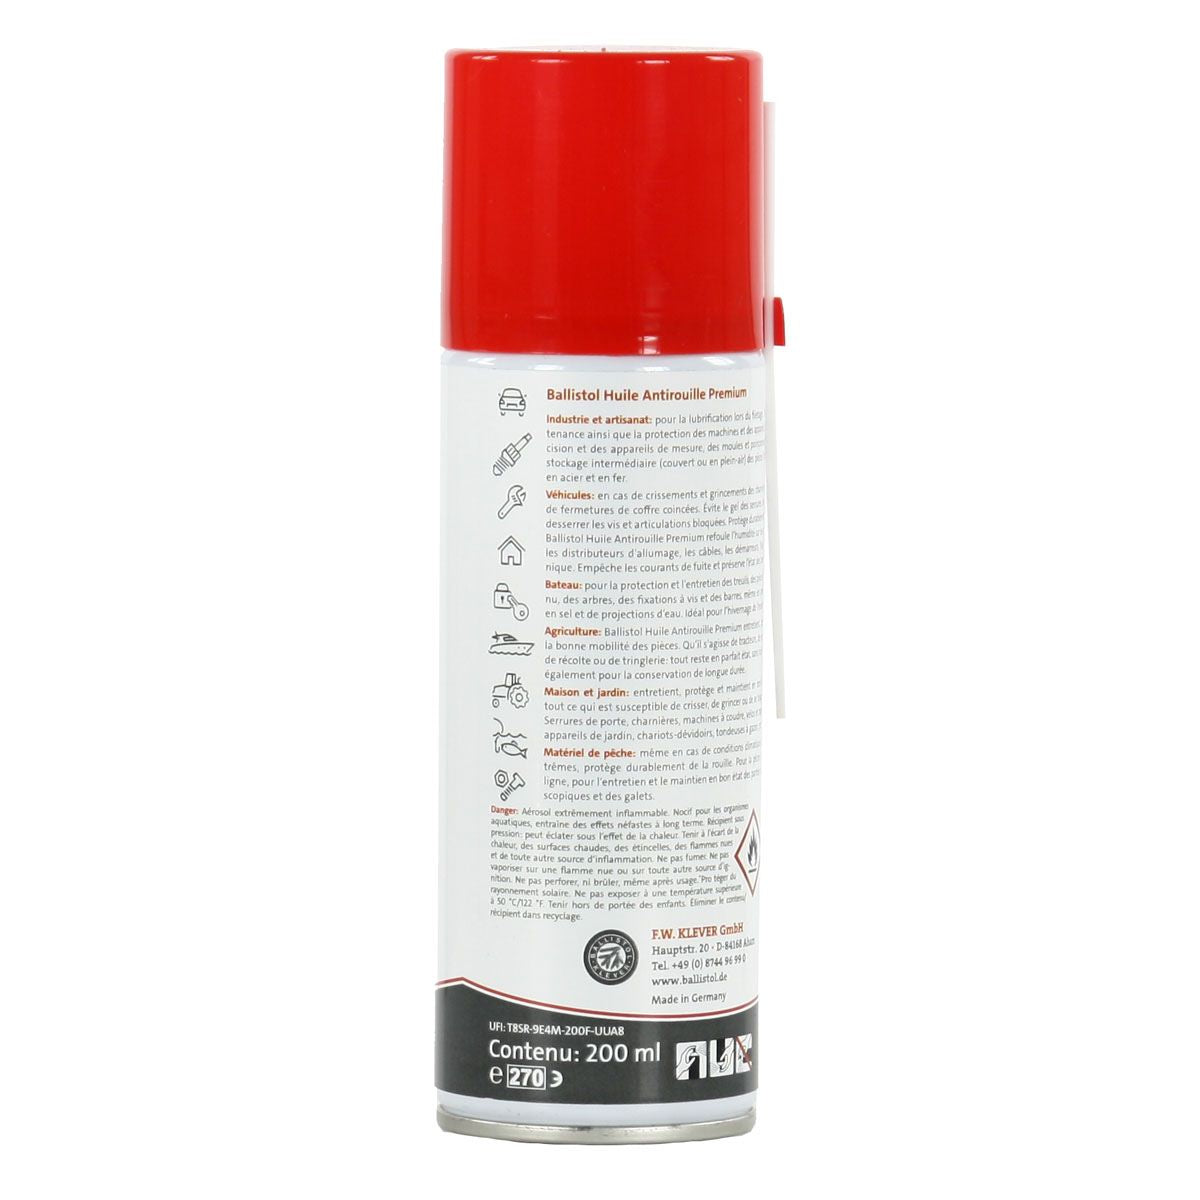 Spray Huile Antirouille Premium BALLISTOL 200 ml